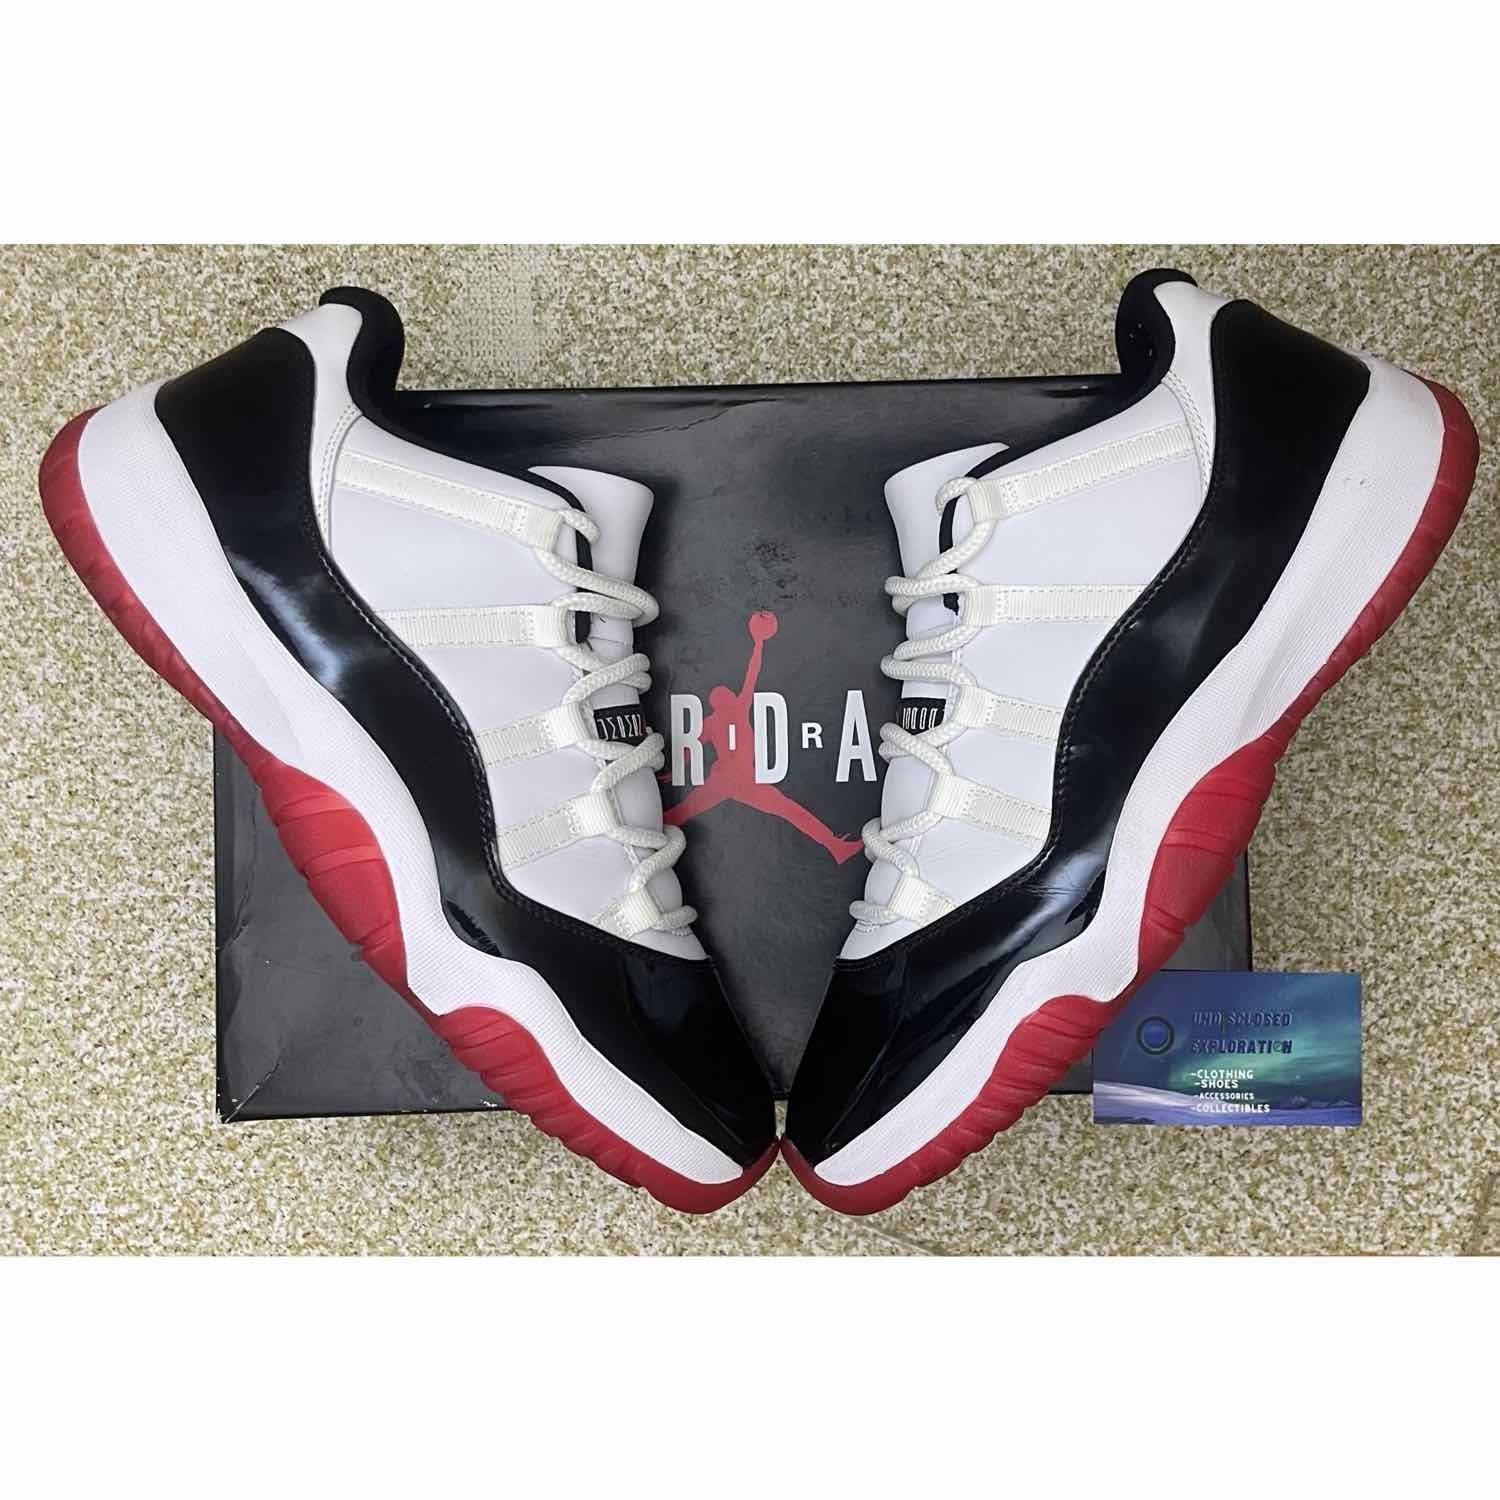 Nike Air Jordan 11 Low Concord Bred Size 11.5 Men